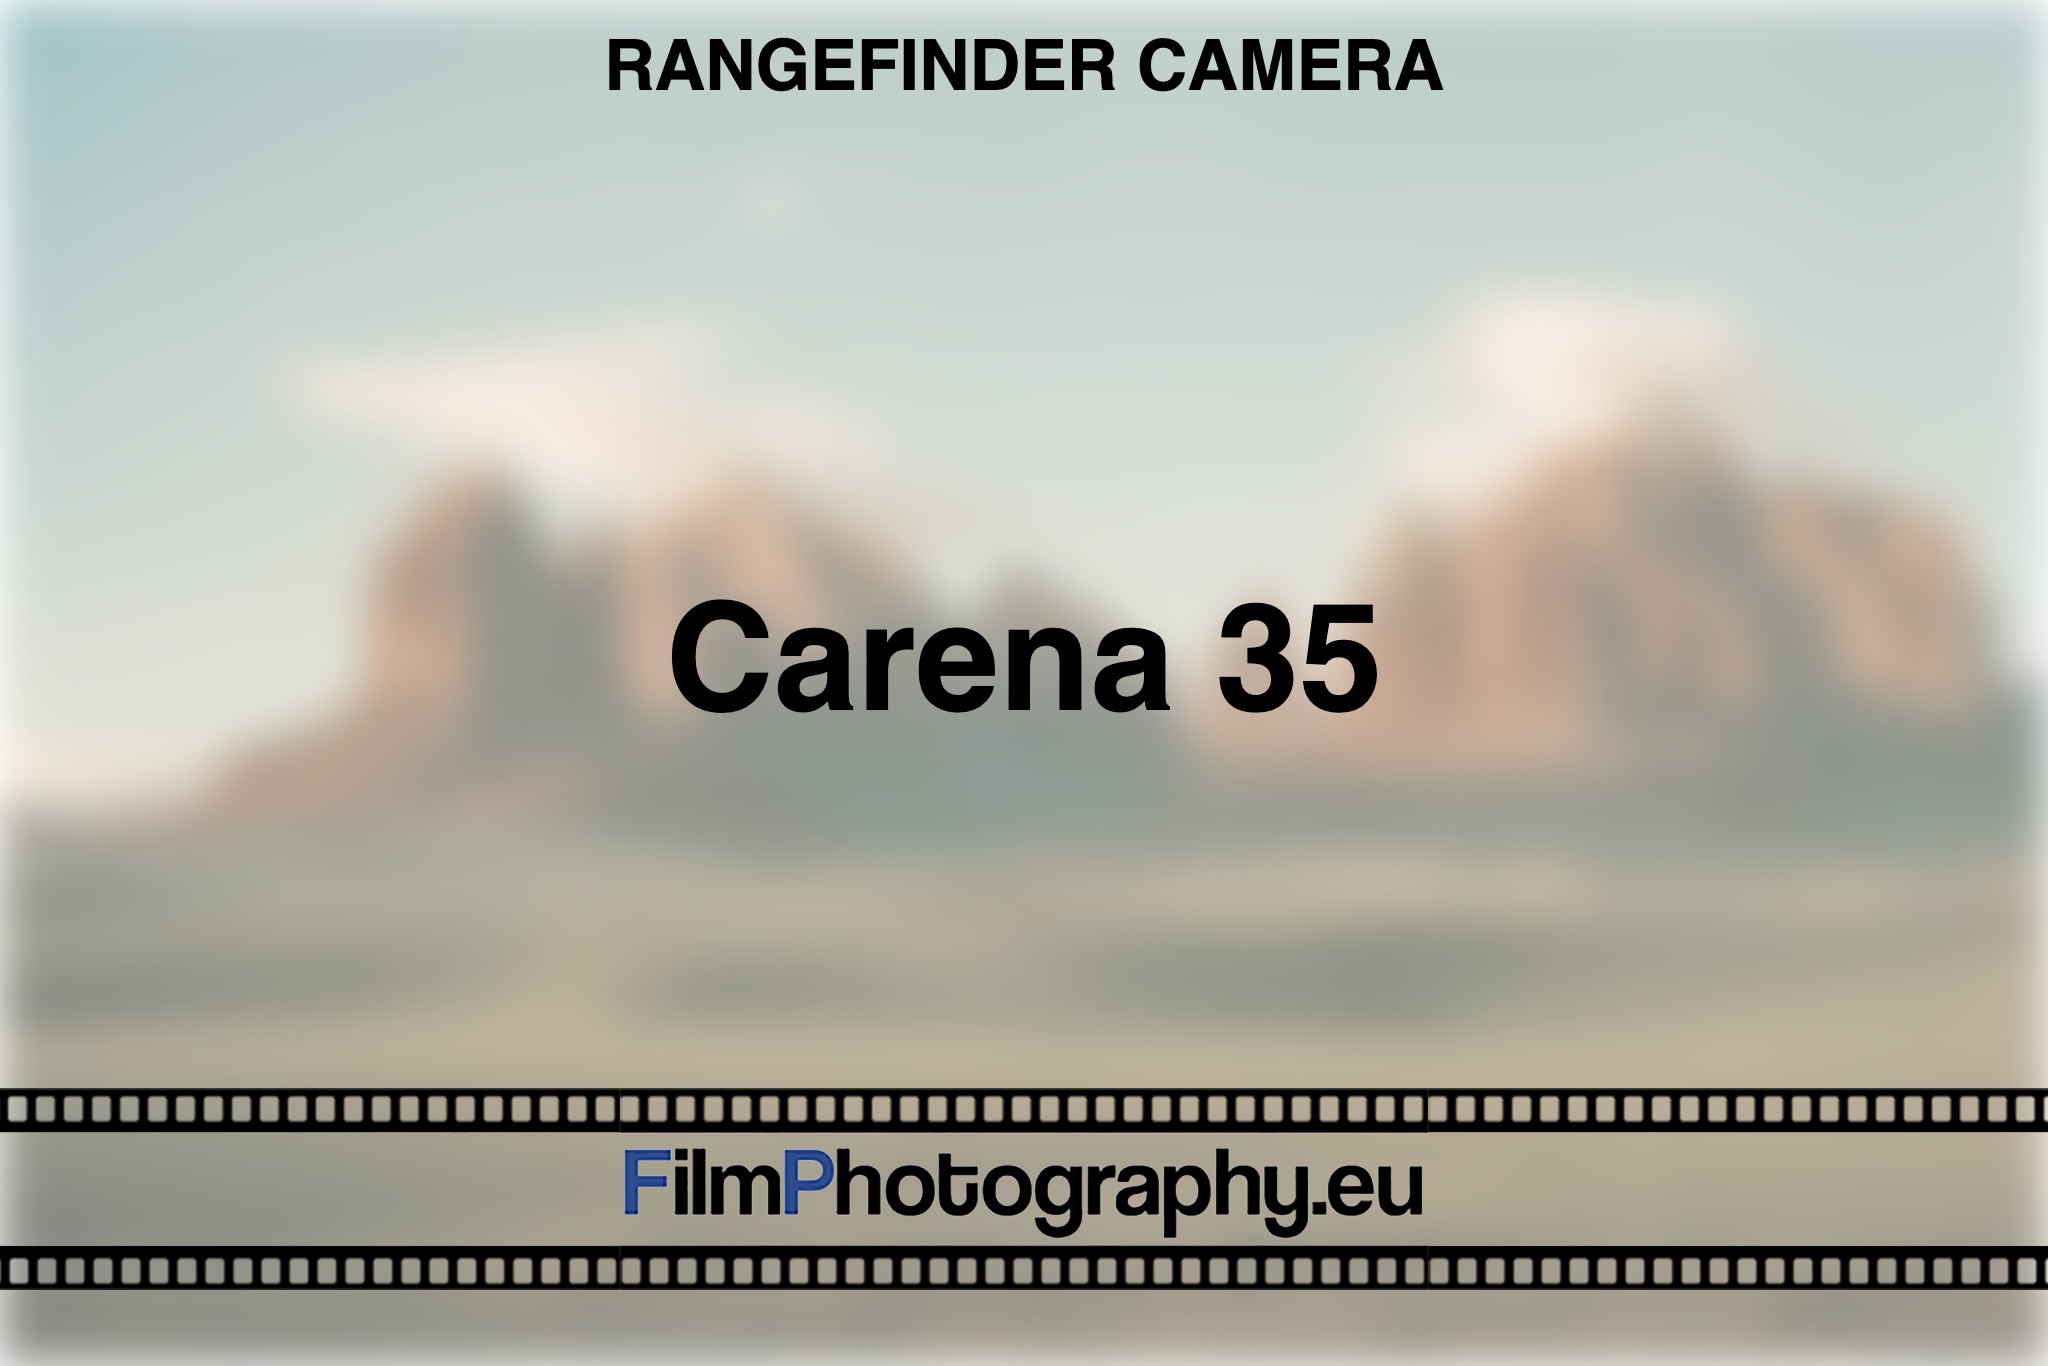 carena-35-rangefinder-camera-bnv